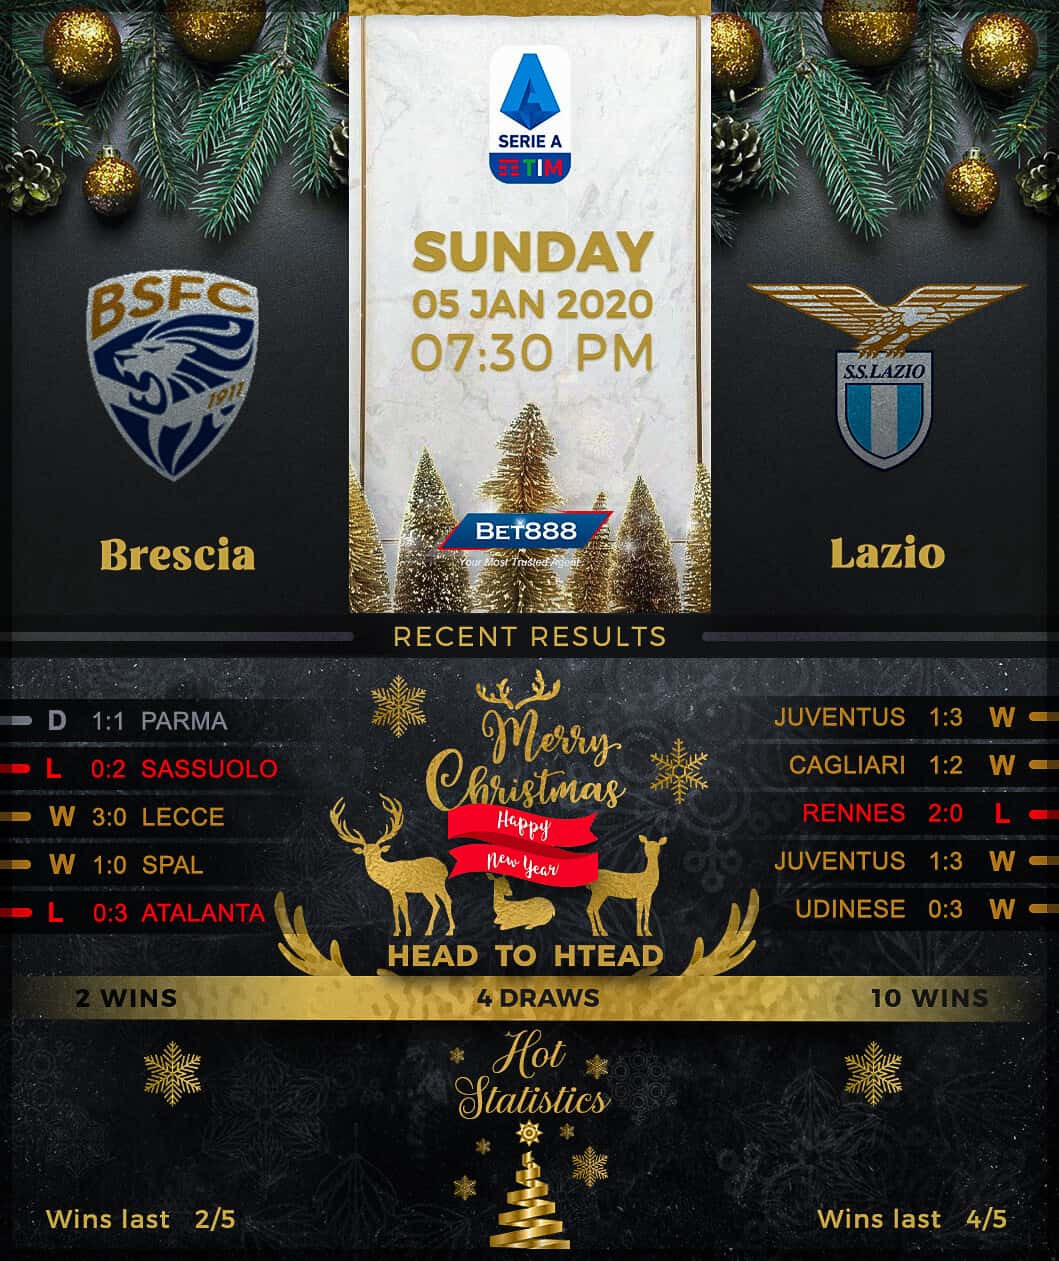 Brescia vs Lazio﻿ 05/01/20